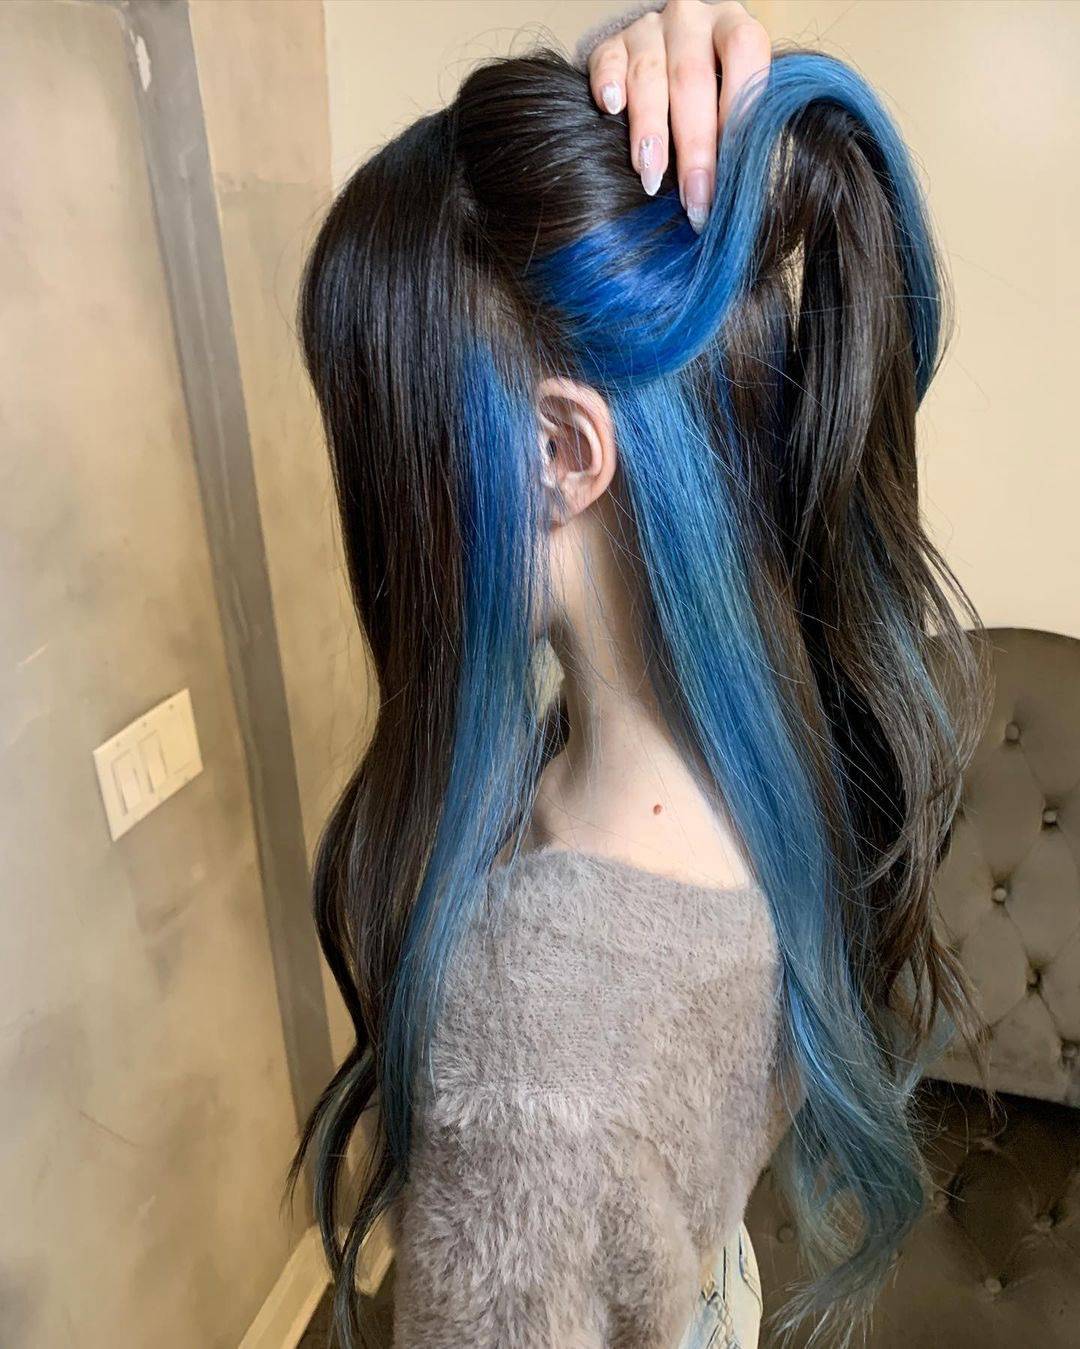 非主流女生发型蓝黑撞色系染发图片 非主流女生发型蓝黑撞色系染发效果